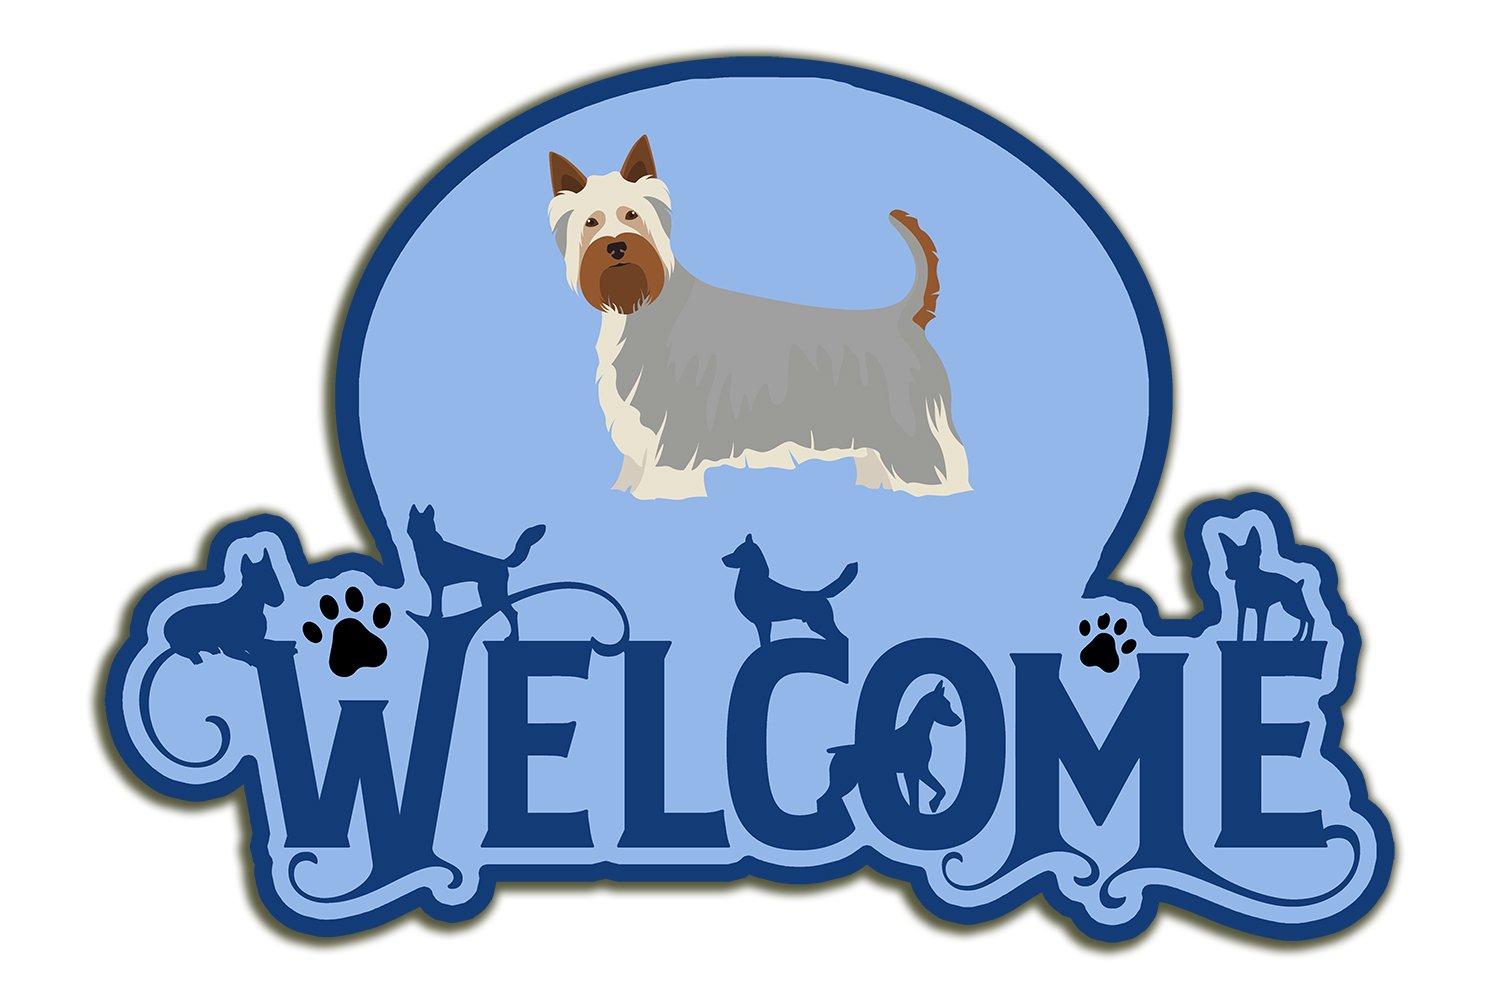 Buy this Australian Silky Terrier #2 Welcome Door Hanger Decoration